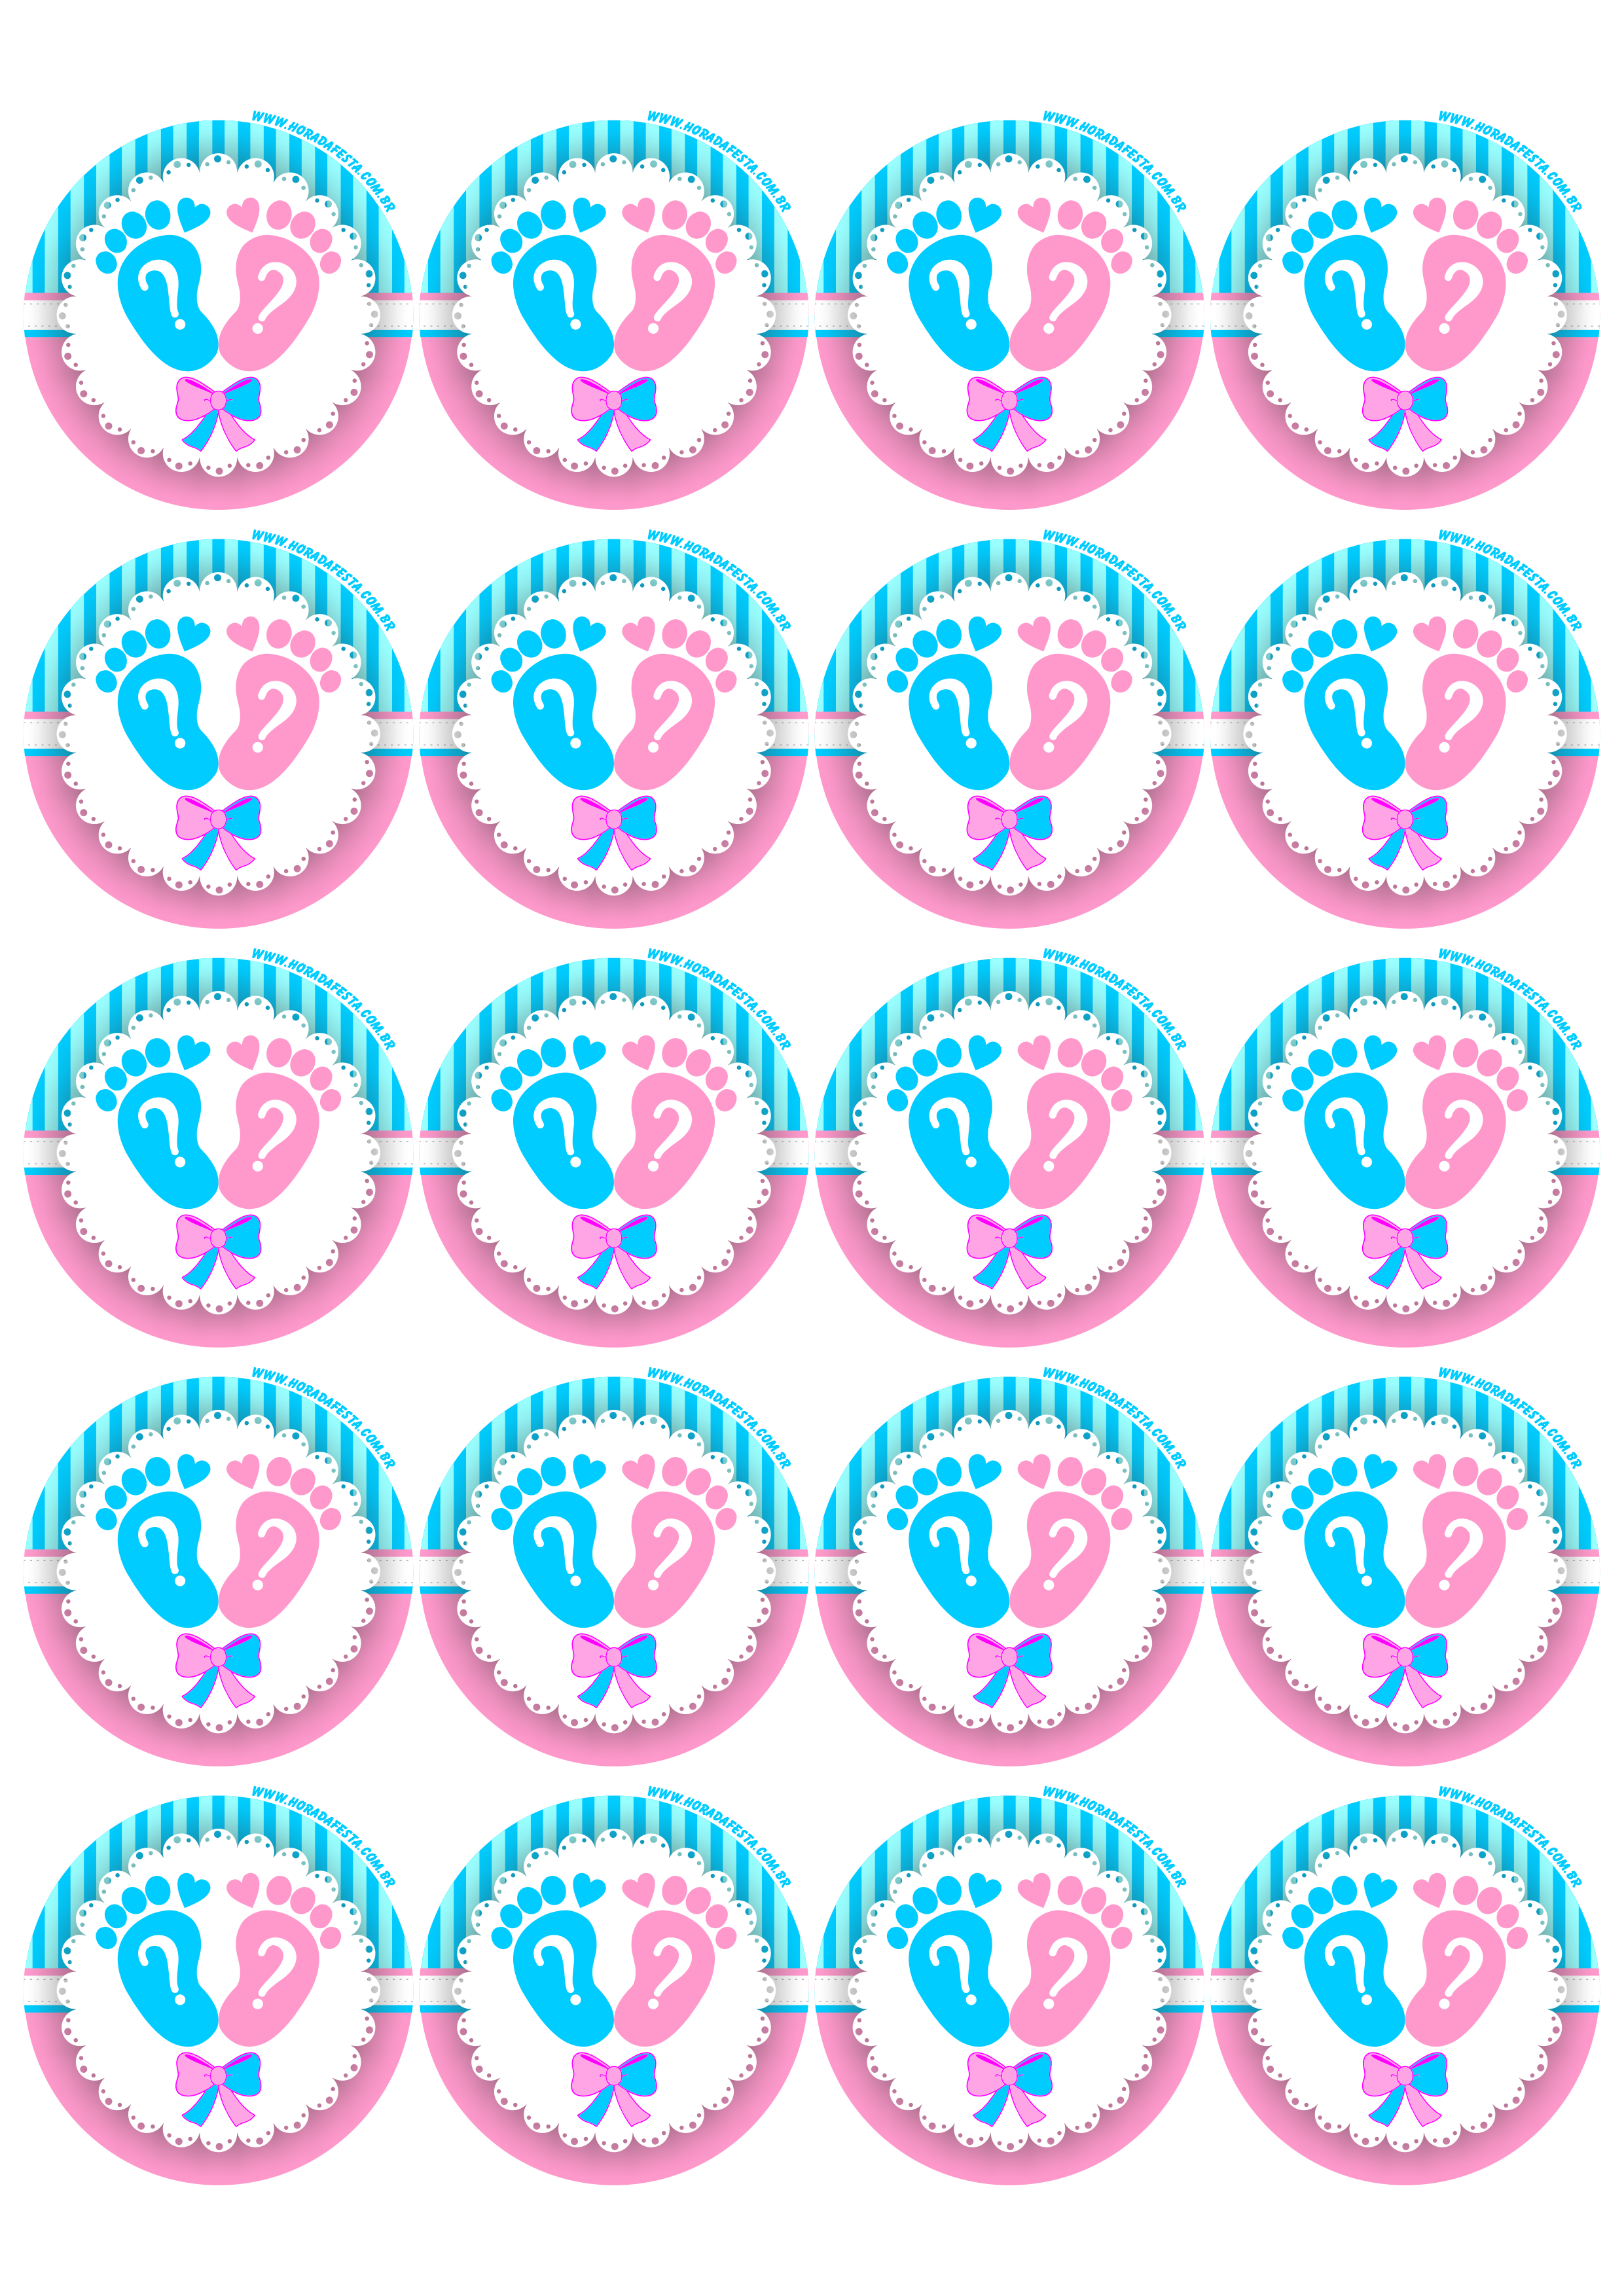 Chá de revelação adesivo redondo tag sticker menino ou menina artes gráficas 20 imagens png